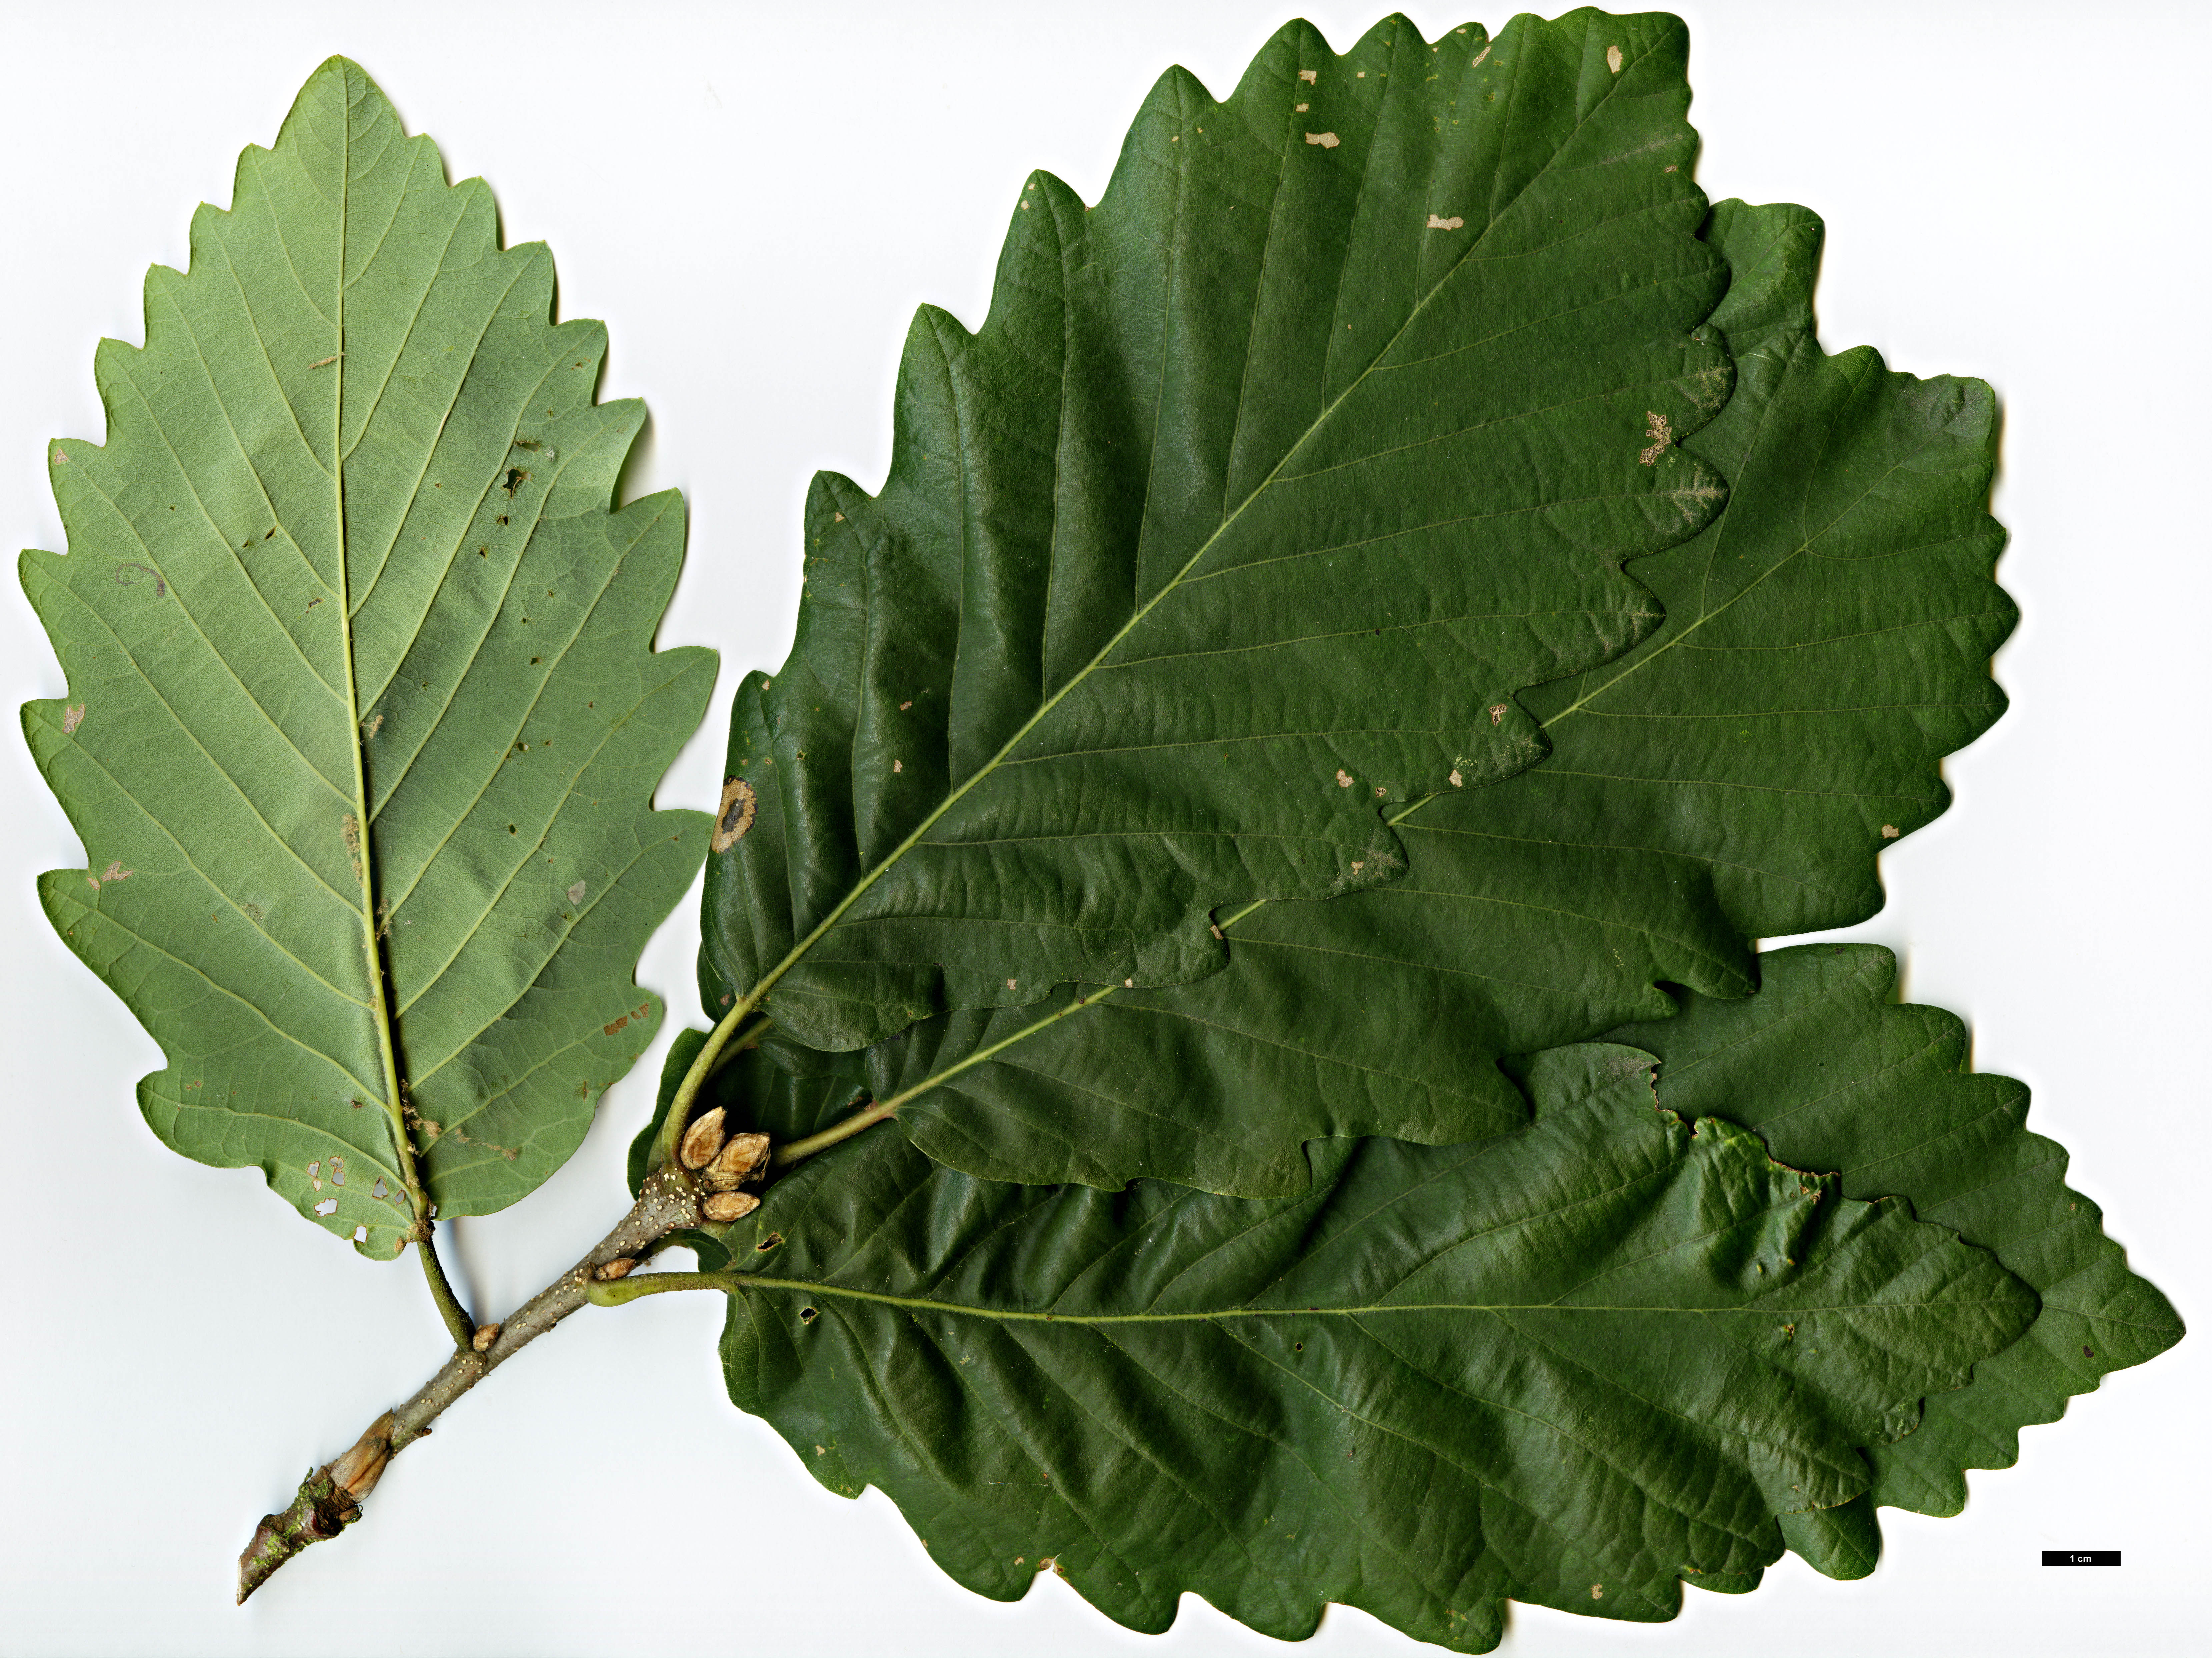 High resolution image: Family: Fagaceae - Genus: Quercus - Taxon: canariensis